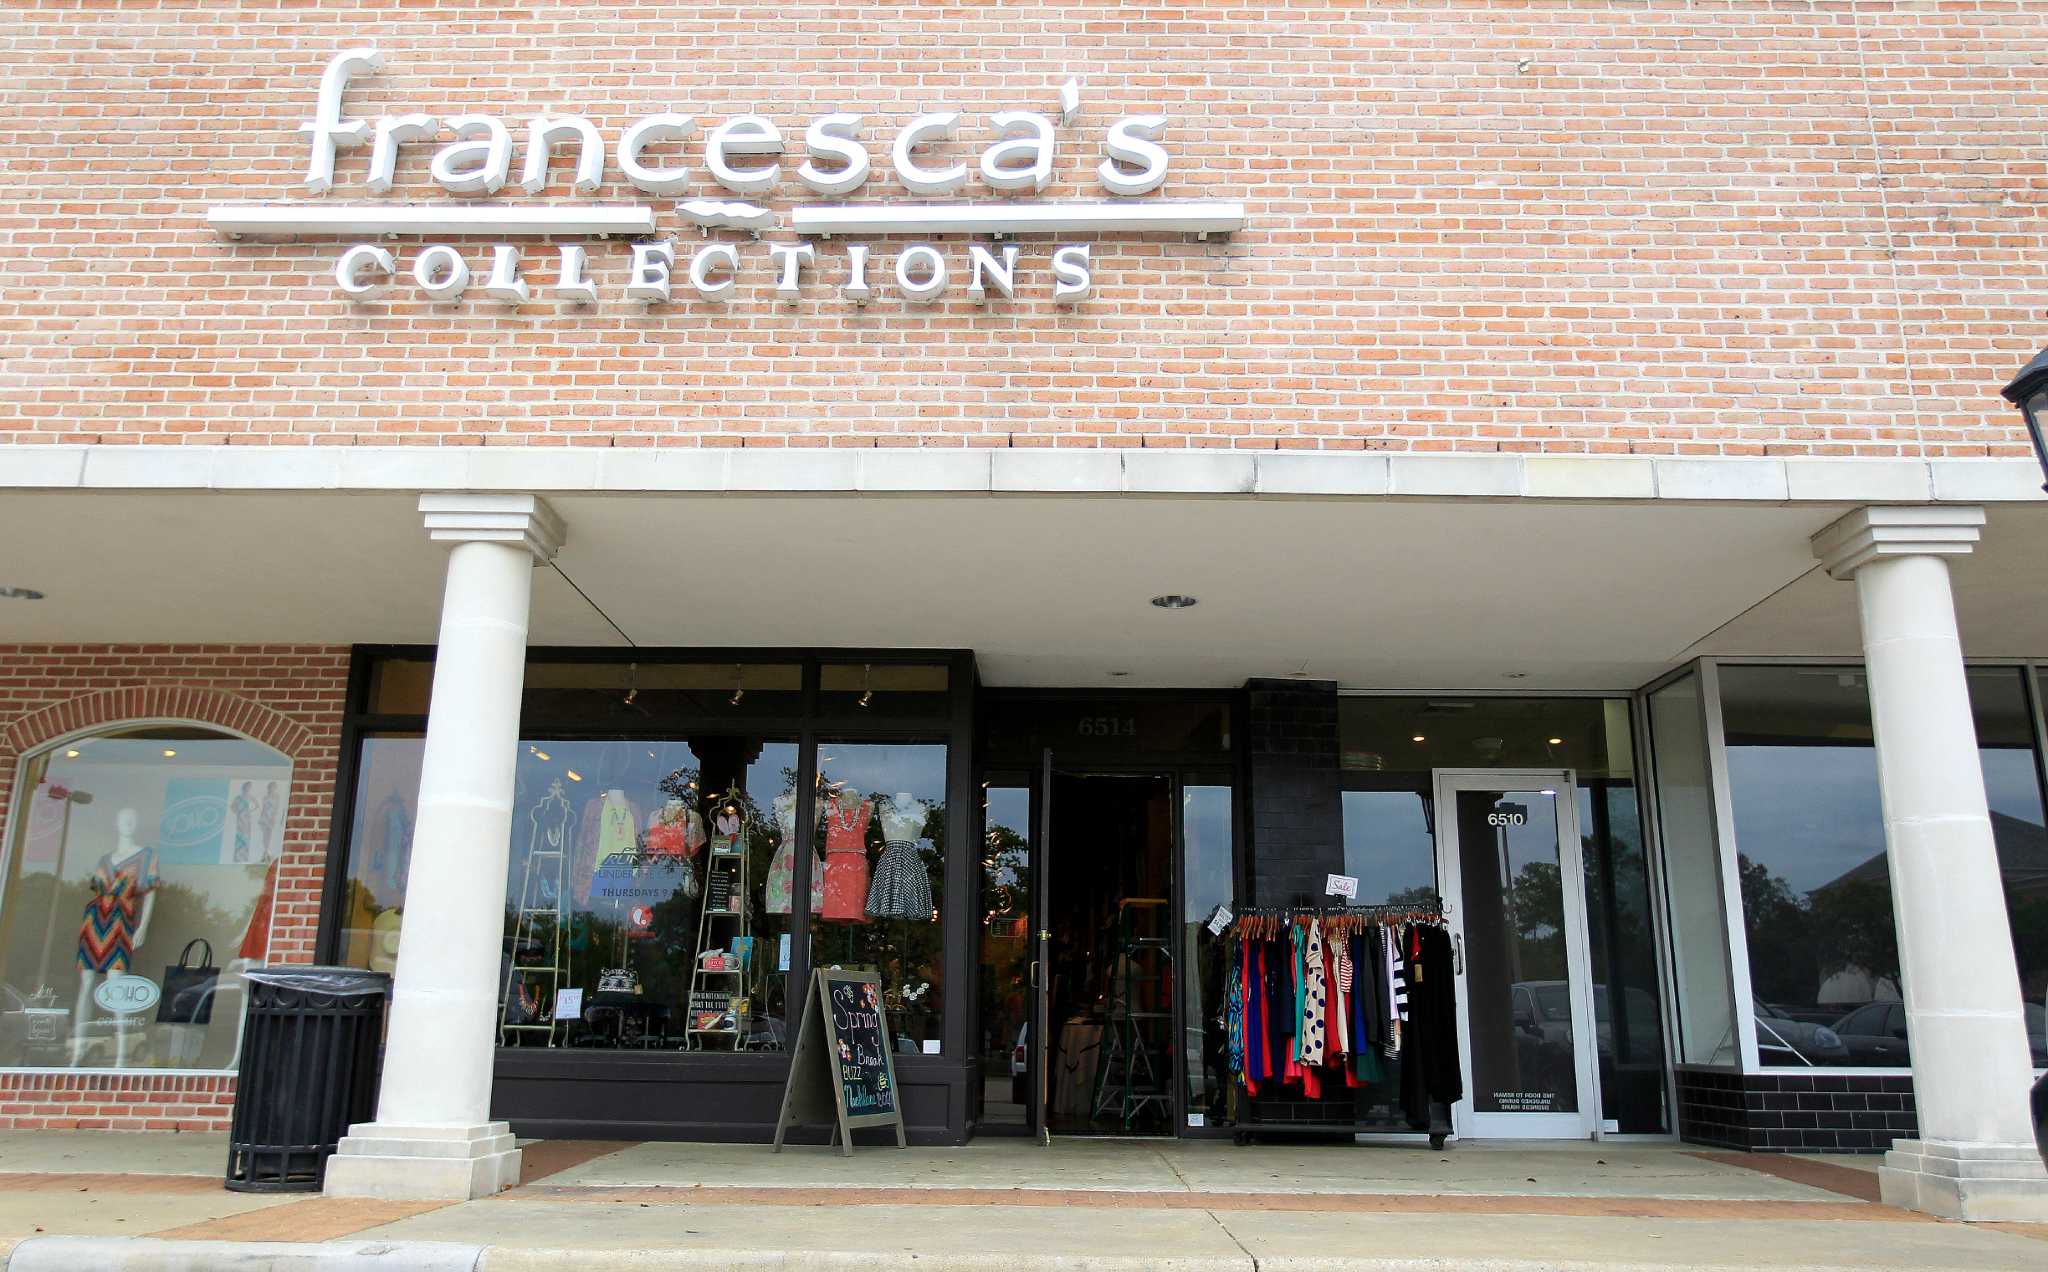 Francesca's names new merchandising officer - Houston Chronicle2048 x 1272